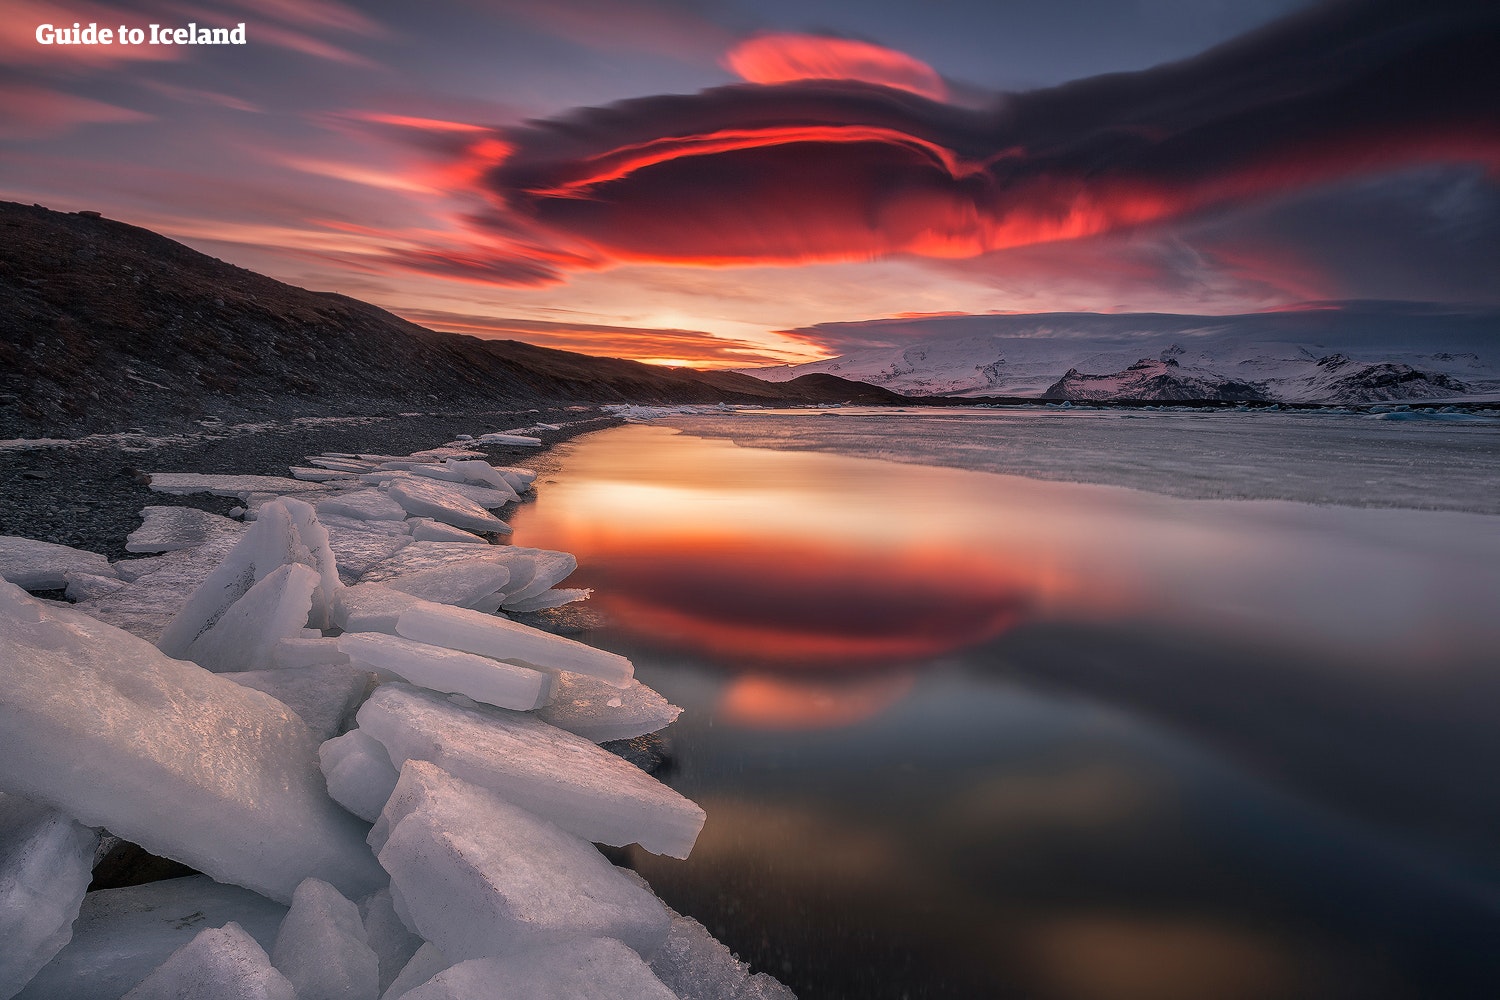 The sun setting on Jökulsárlón glacier lagoon, painting the sky red